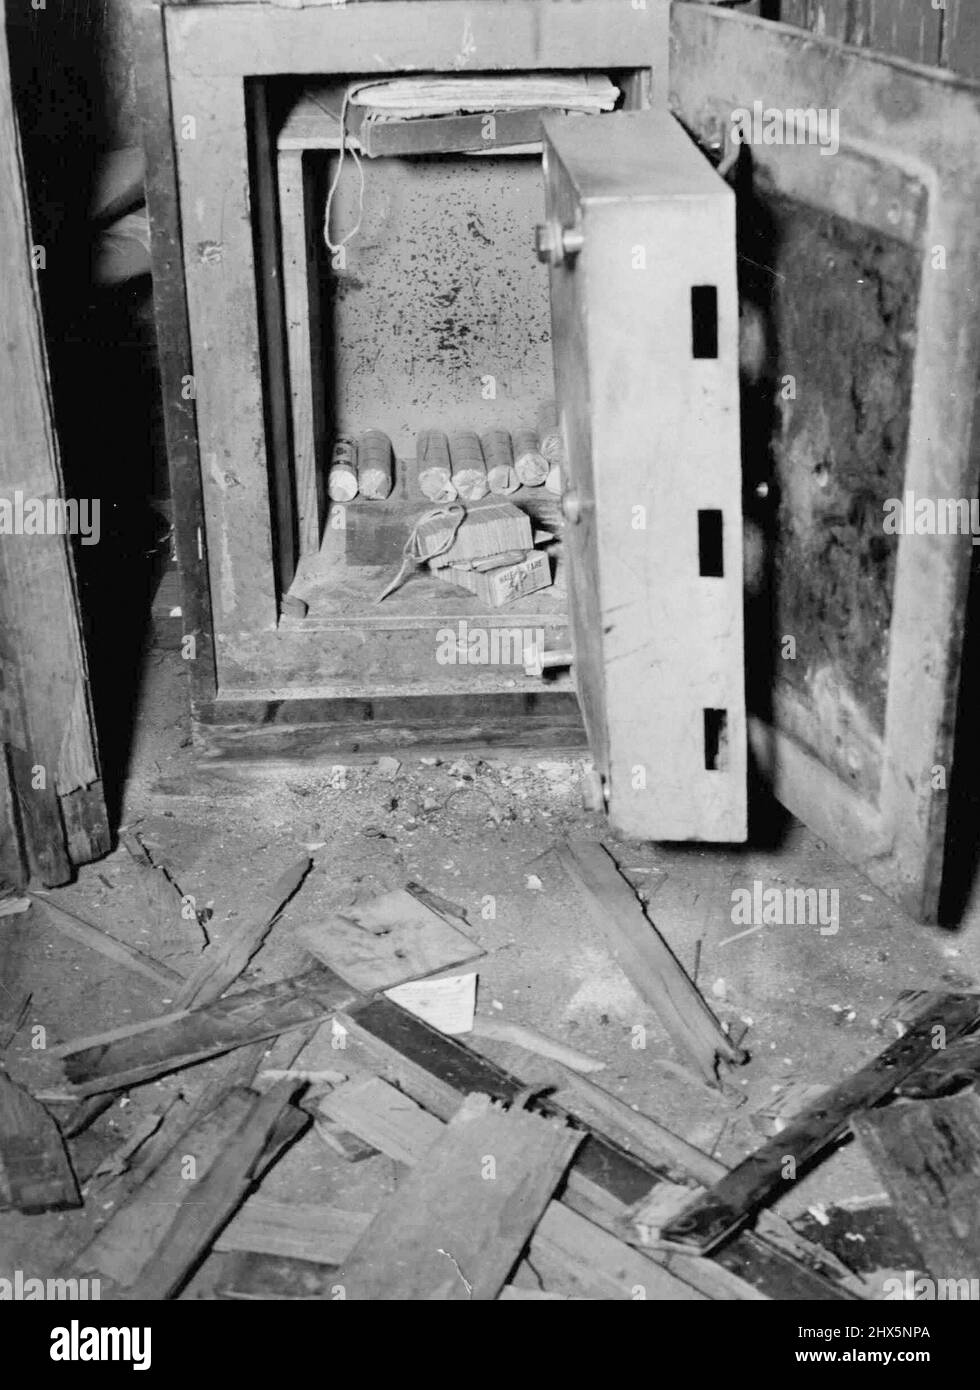 Die zerbrochene Tür des Safes am Bahnhof Artarmon. Letzte Nacht von Dieben gemäht. Obwohl sie mit £7 8s entkommen waren, übersahen sie ein Rack mit £1 OS 4D im Wechsel, wie gezeigt, verpackt. Das Bahnhofsbüro war mit Trümmern übersät. 22. August 1938. Stockfoto